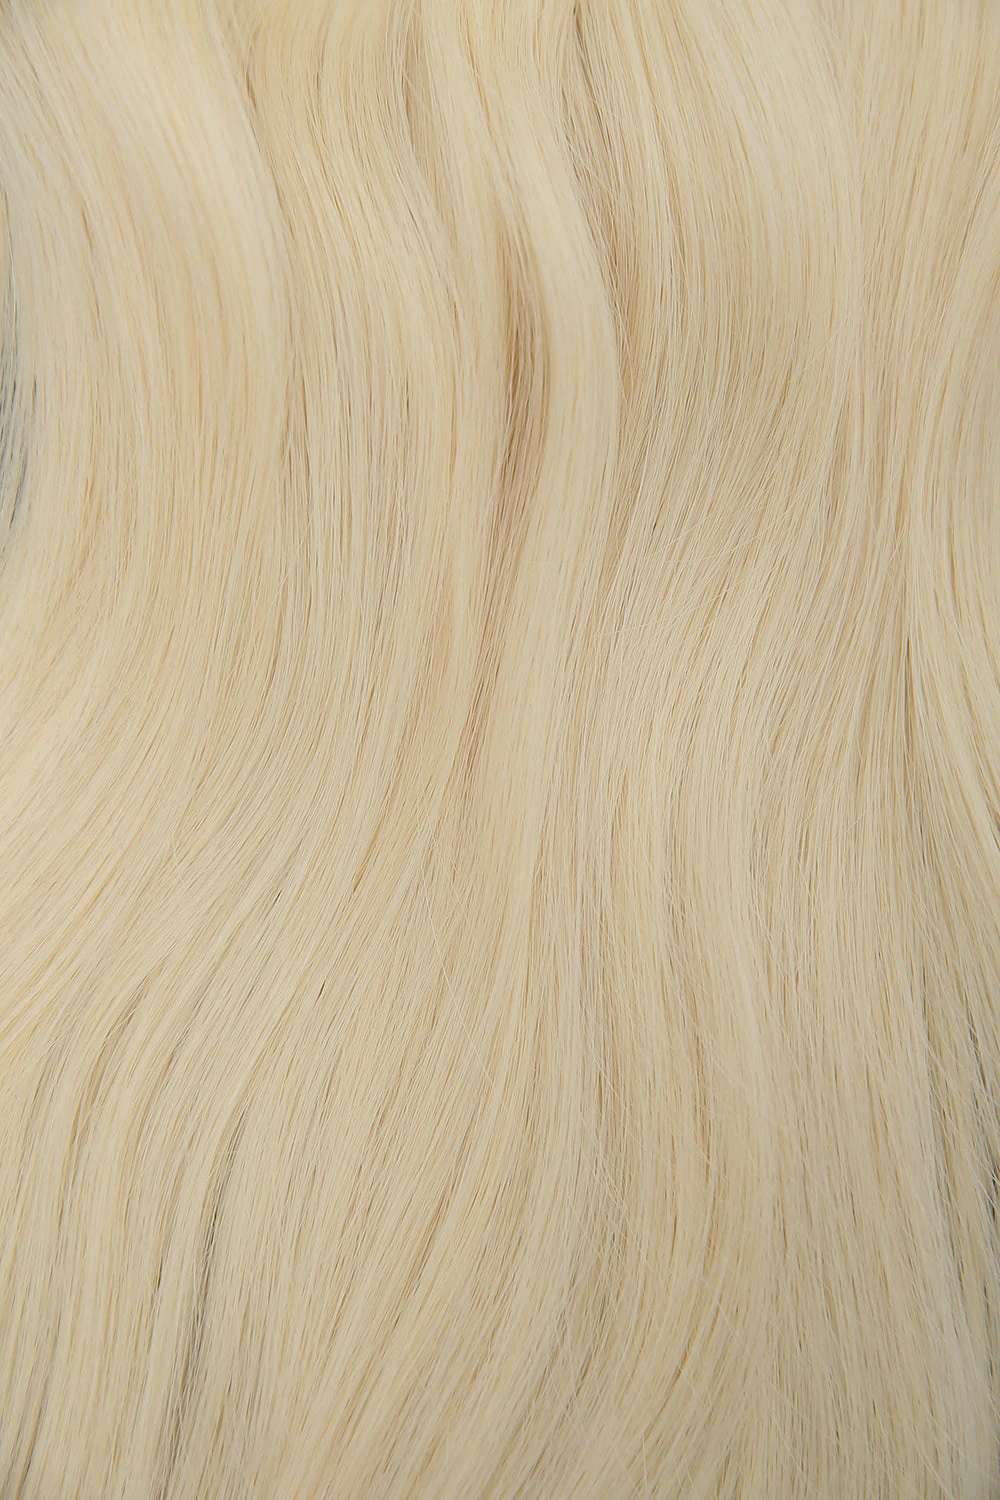 #613 Platinum Blonde Clip-In Bun Extension